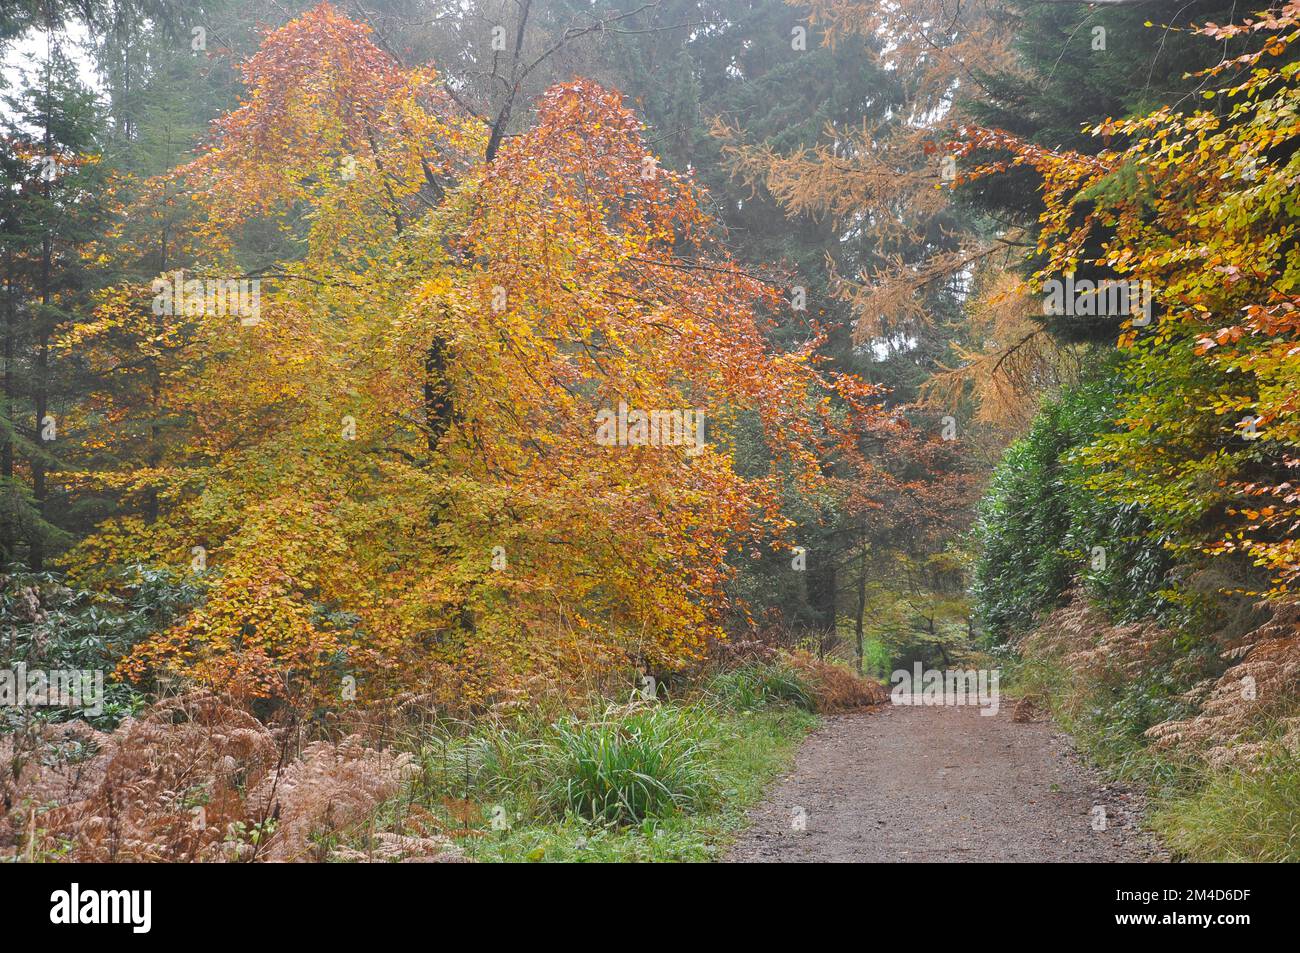 Ein Weg durch einen nebligen gemischten Wald im Herbst. Die Buchenbäume sind Farben von Grün bis Gold und kontrastieren das tiefe Grün der Nadelbäume und das Stockfoto